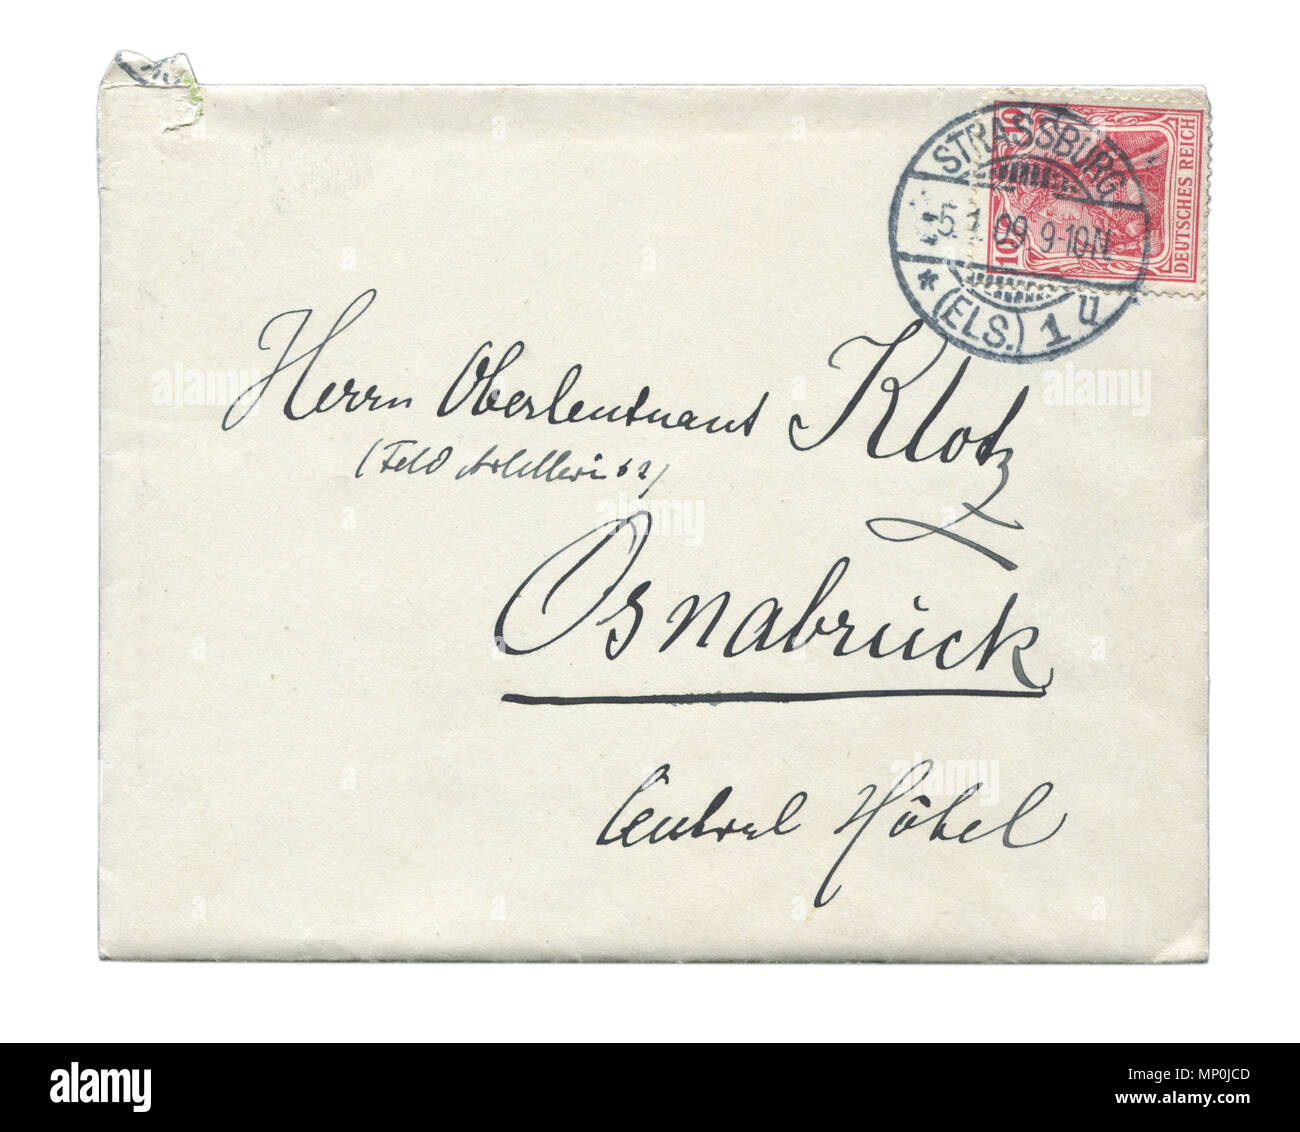 Alte Deutsche Post Umschlag mit roten Stempel, Stempel, mit Tinte Inschrift. Straßburg, das Kaiserliche Gebiet von Elsaß-Lothringen, Deutsches Reich, 1909 Stockfoto